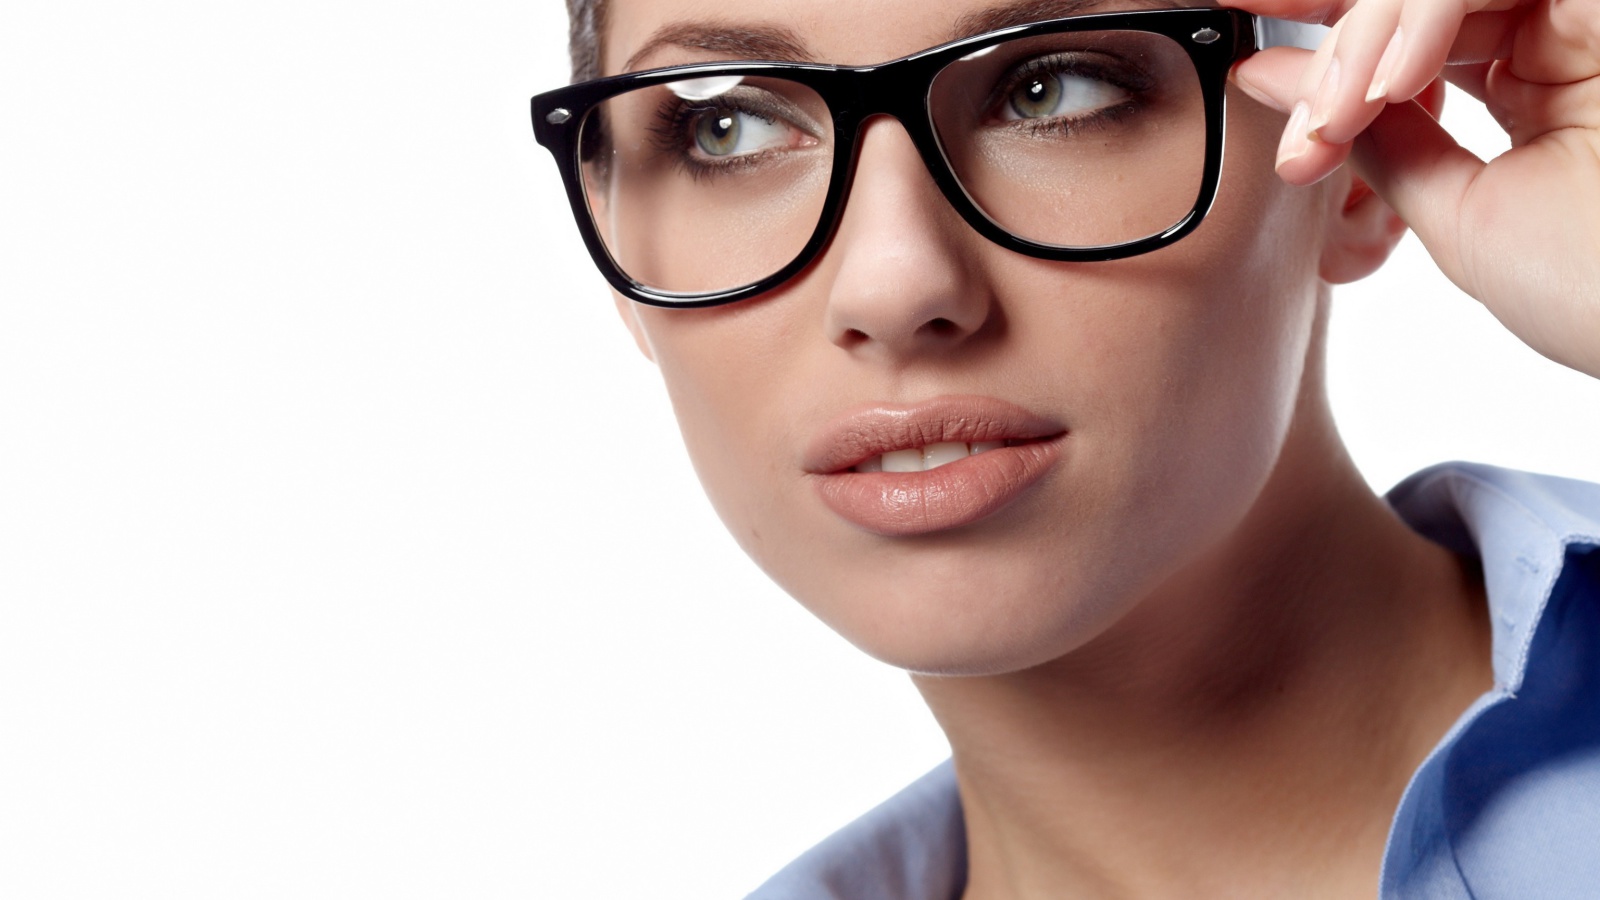 Girl in Glasses wallpaper 1600x900